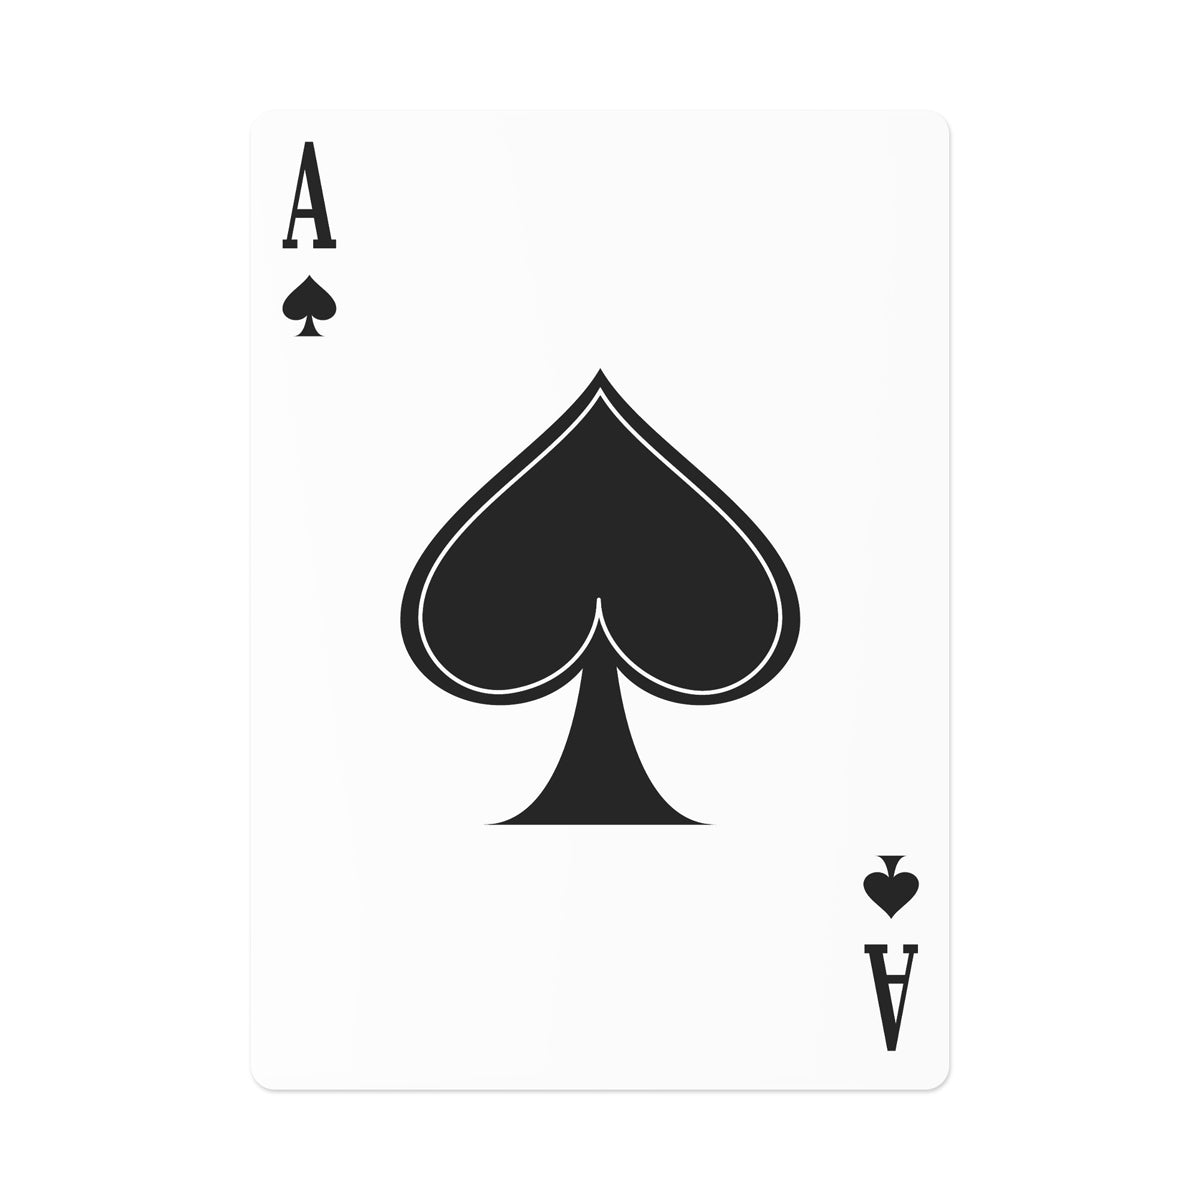 Maraheim Tengu in the Field Poker Cards